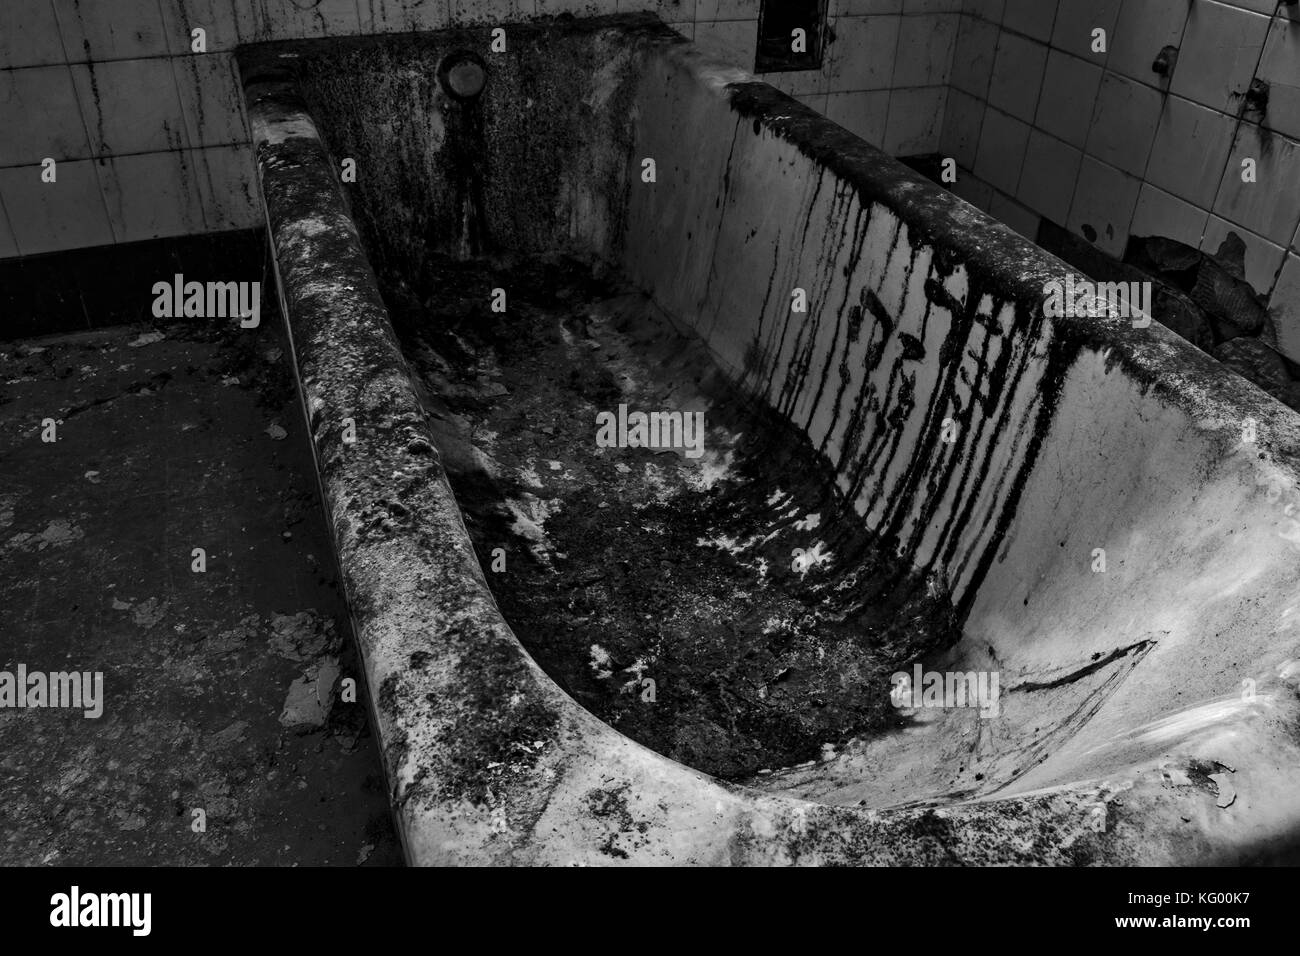 Ein Blick auf einen alten Elektro Schock Gerät, in einem verlassenen  psychiatrischen Krankenhaus Stockfotografie - Alamy